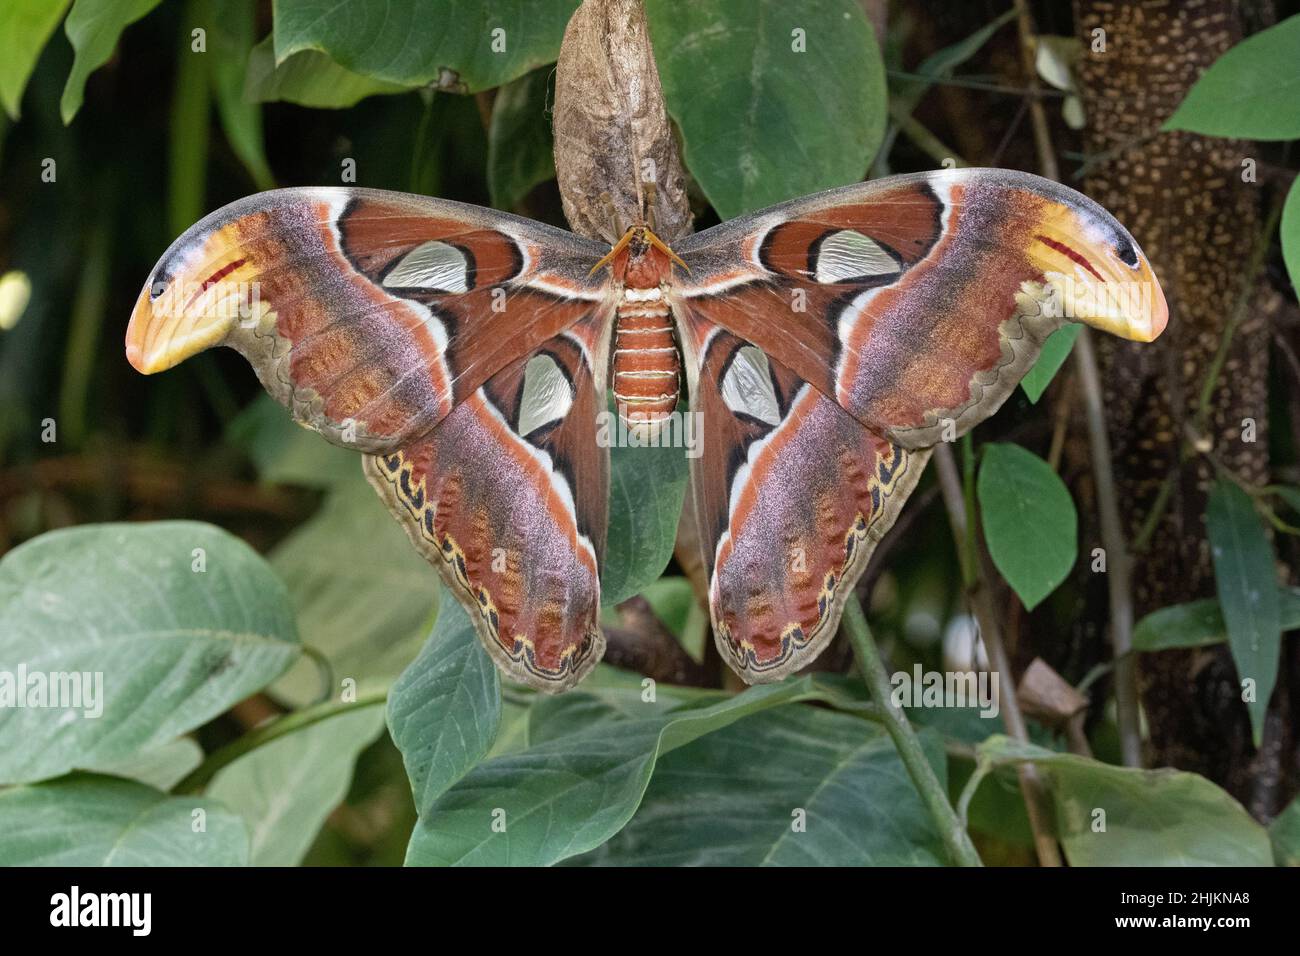 Nahaufnahme eines Atlasspinners in der Allgäuer Schmetterling Erlebniswelt, einem Schmetterlingspark mit Gewächshäusern voller bunter Insekten, ein Er Stock Photo